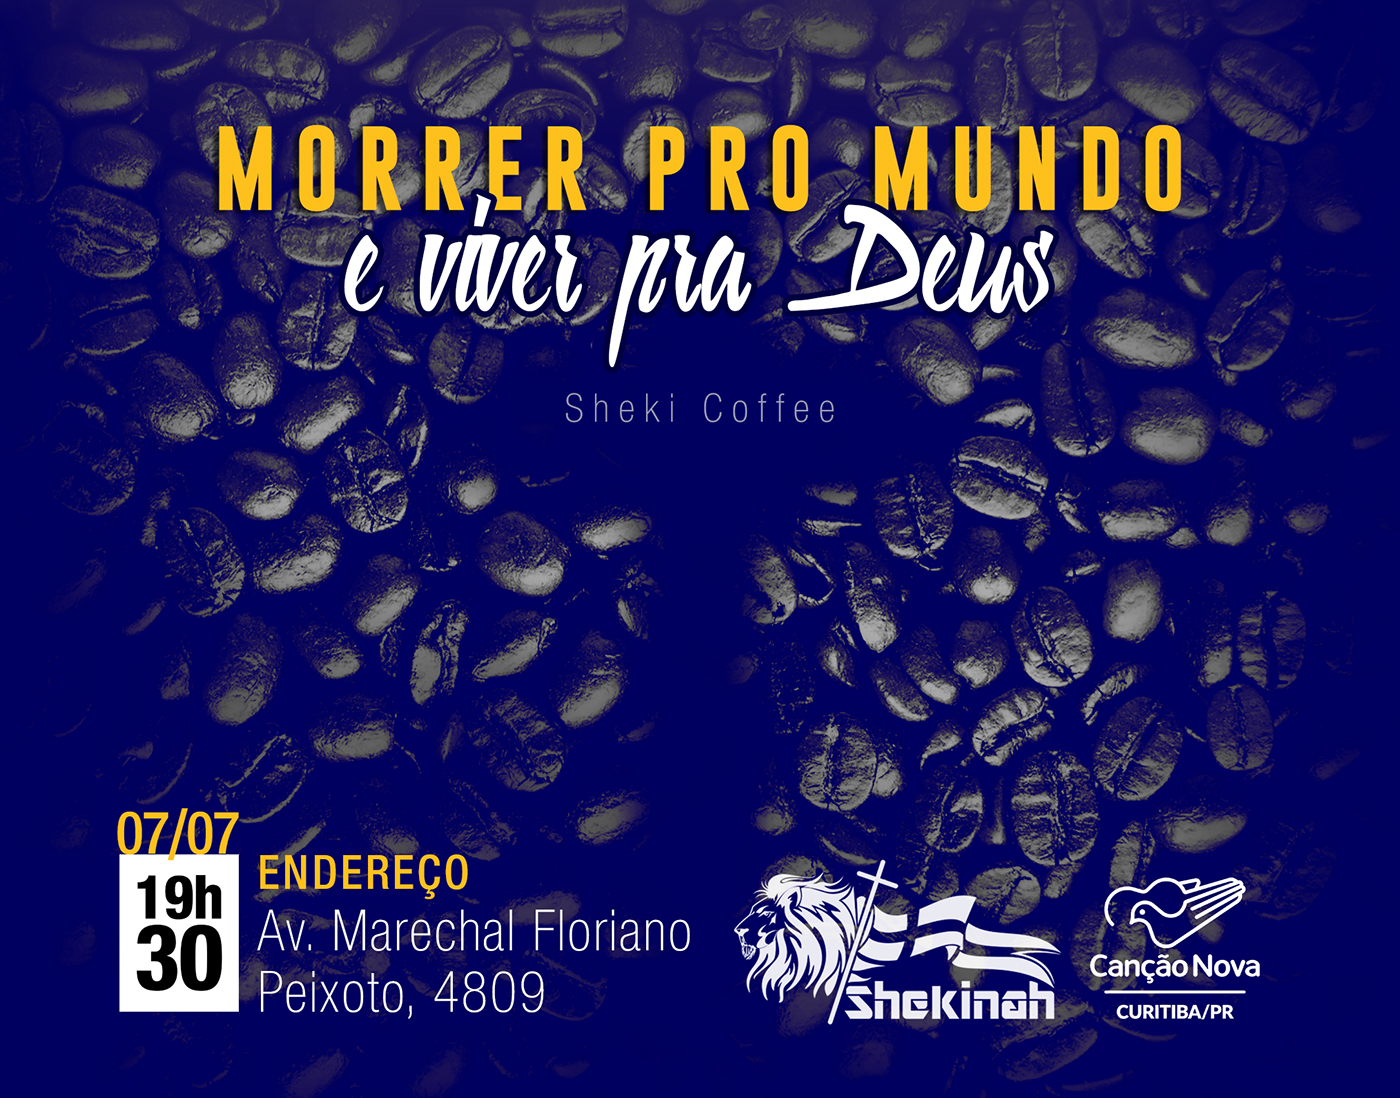 Canção Nova Curitiba poster